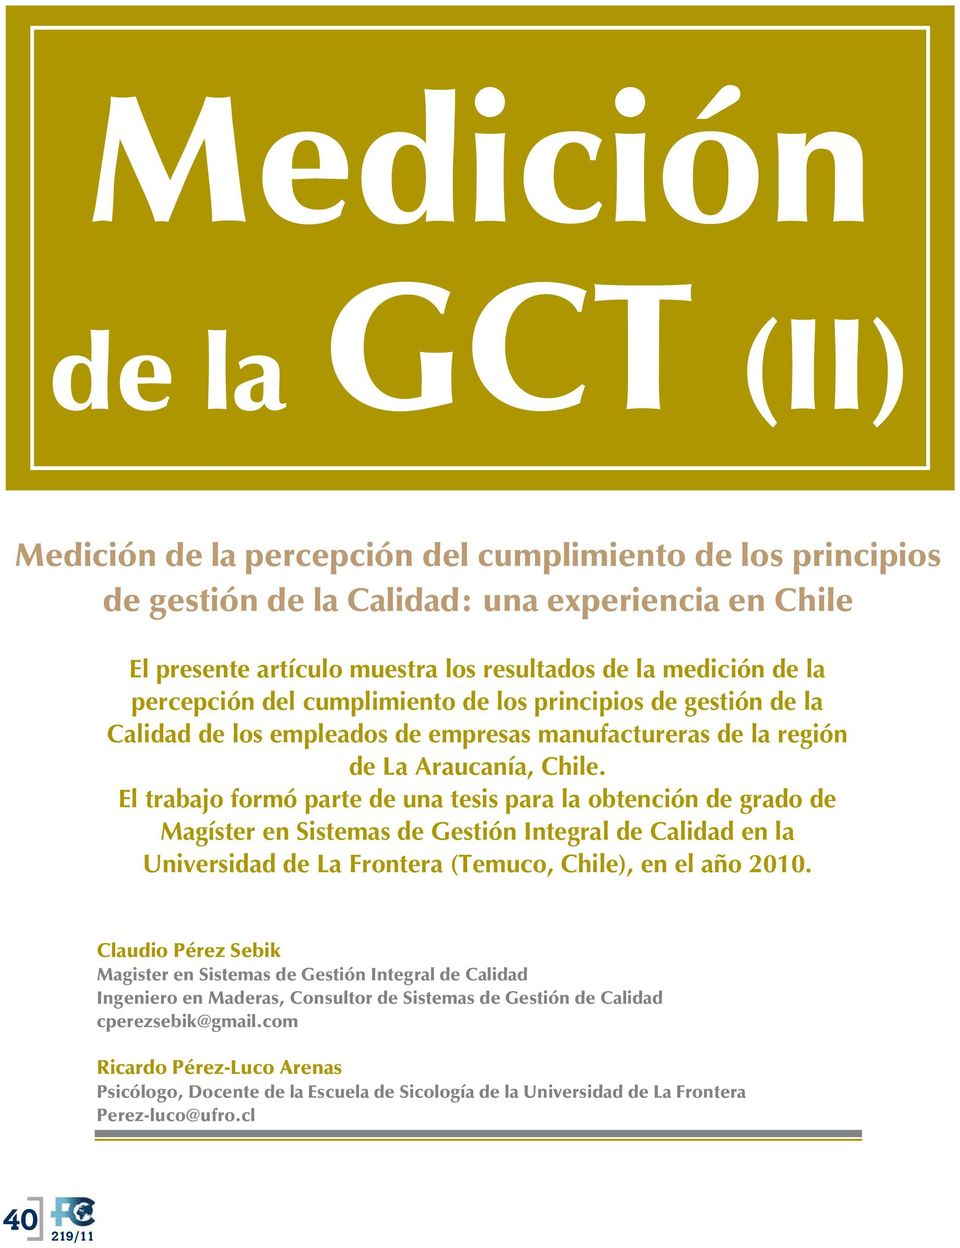 El trabajo formó parte de una tesis para la obtención de grado de Magíster en Sistemas de Gestión Integral de Calidad en la Universidad de La Frontera (Temuco, Chile), en el año 2010.